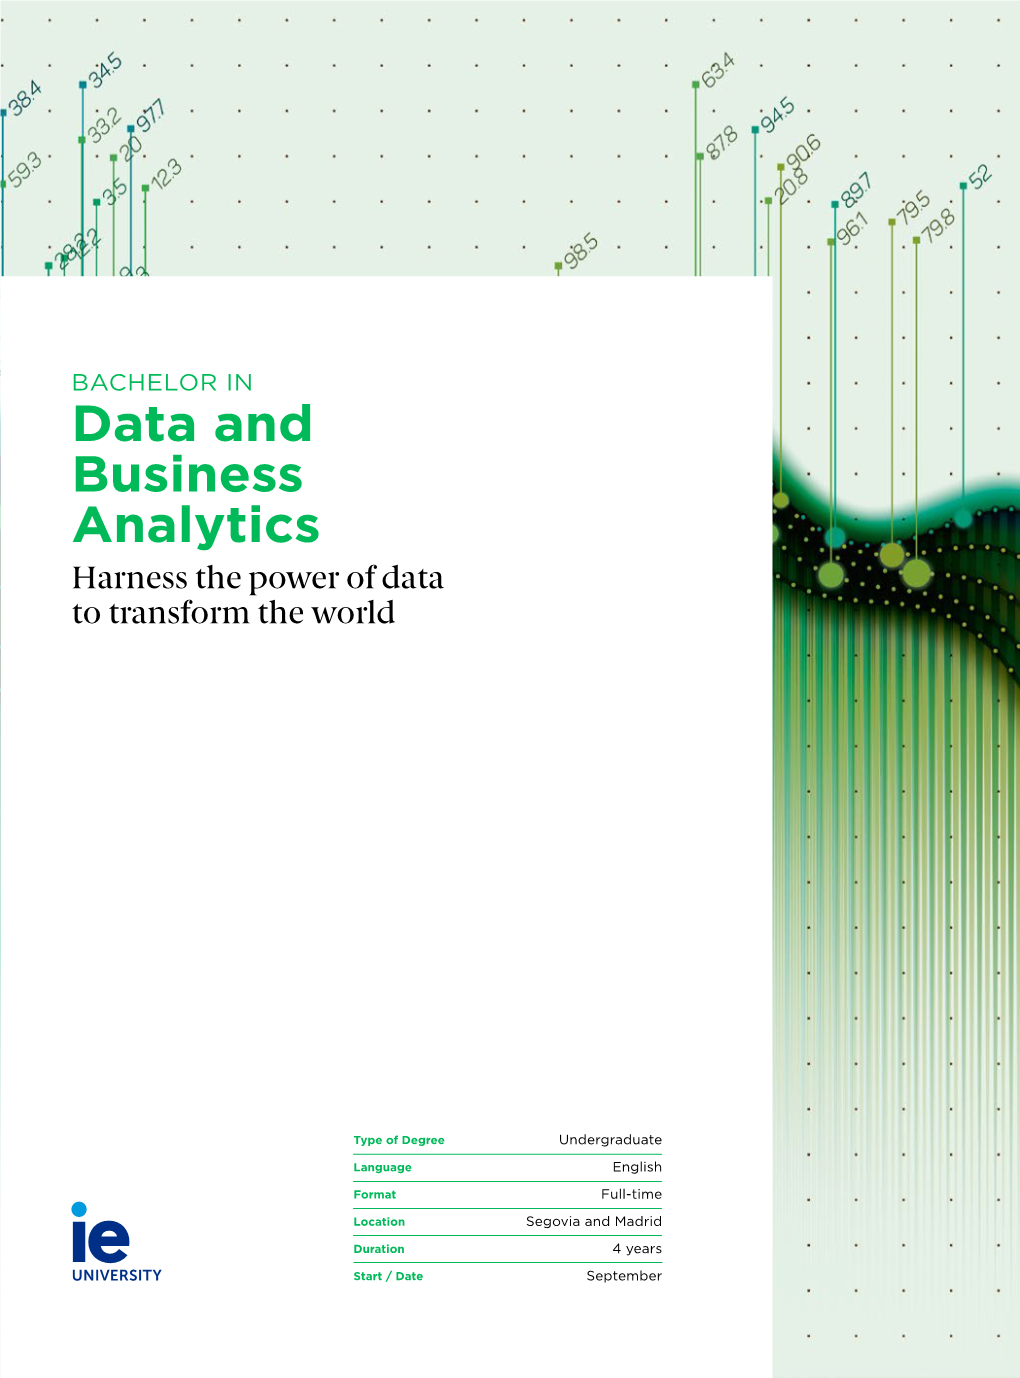 Data and Business Analytics